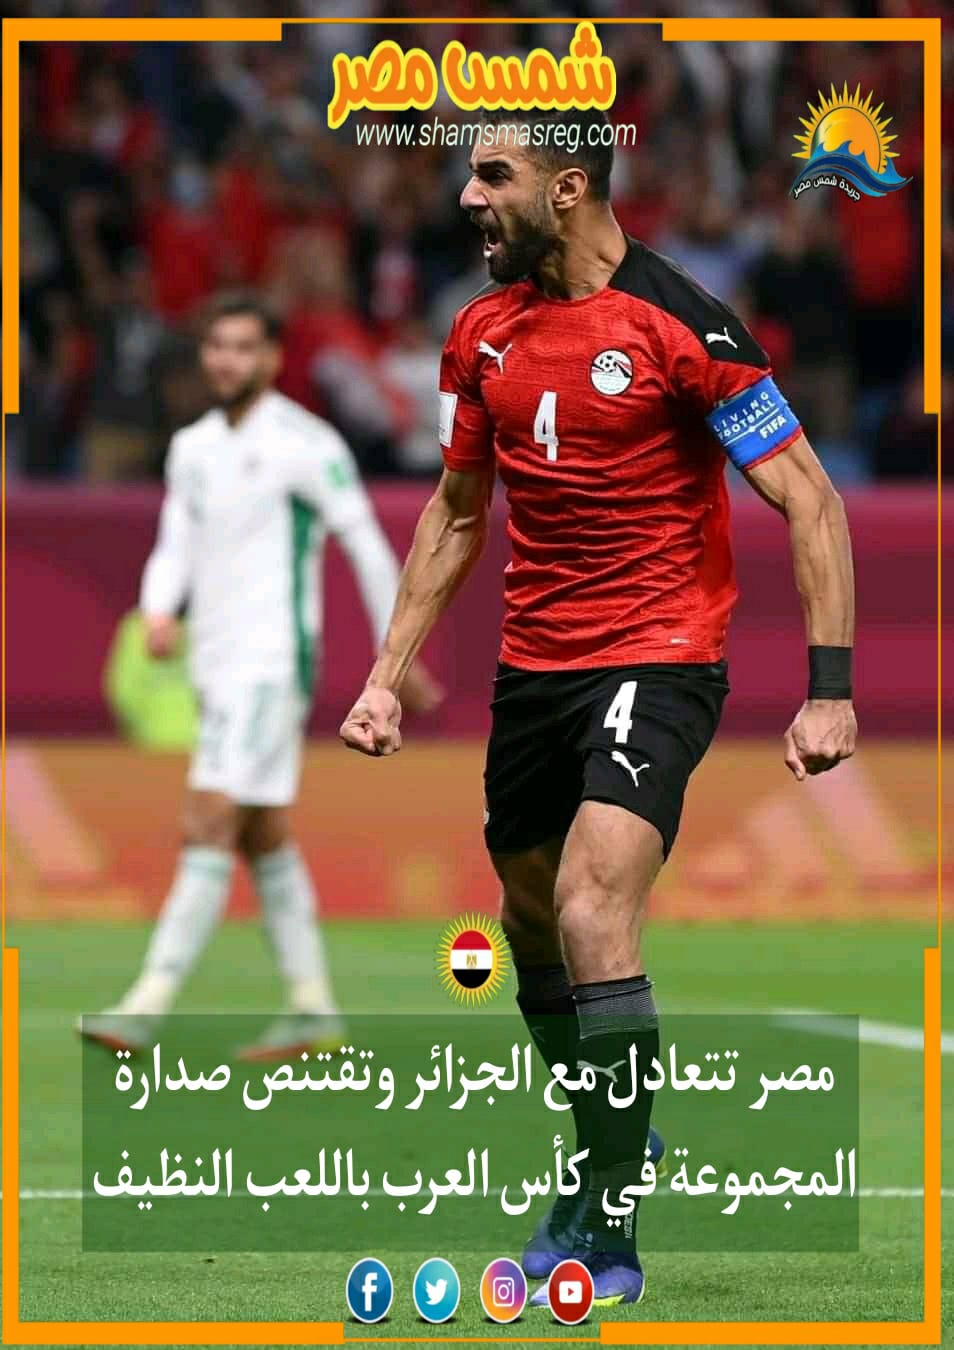 |شمس مصر|.. مصر تتعادل مع الجزائر وتقتنص صدارة المجموعة في كأس العرب باللعب النظيف